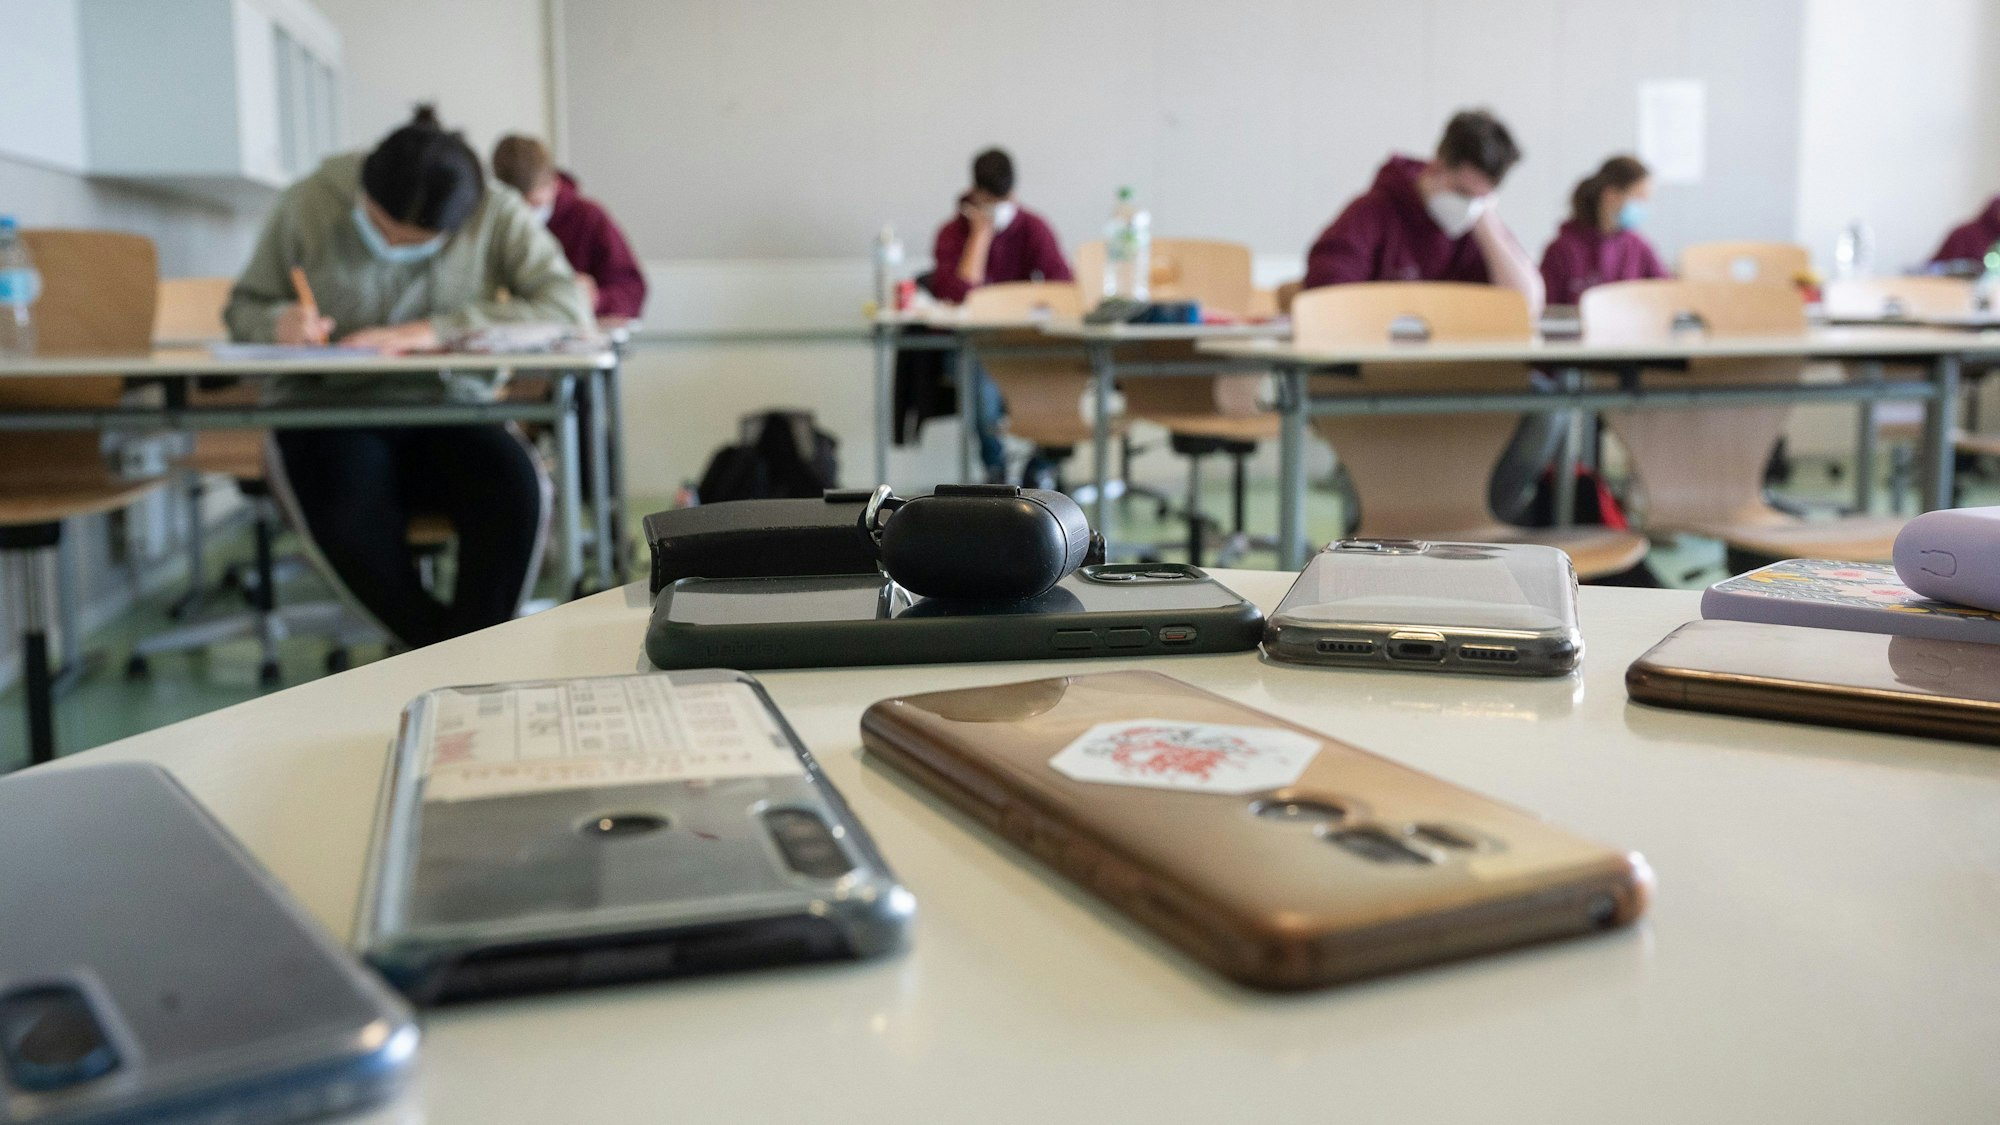 Ausgeschaltete Smartphones liegen in einem Klassenzimmer.